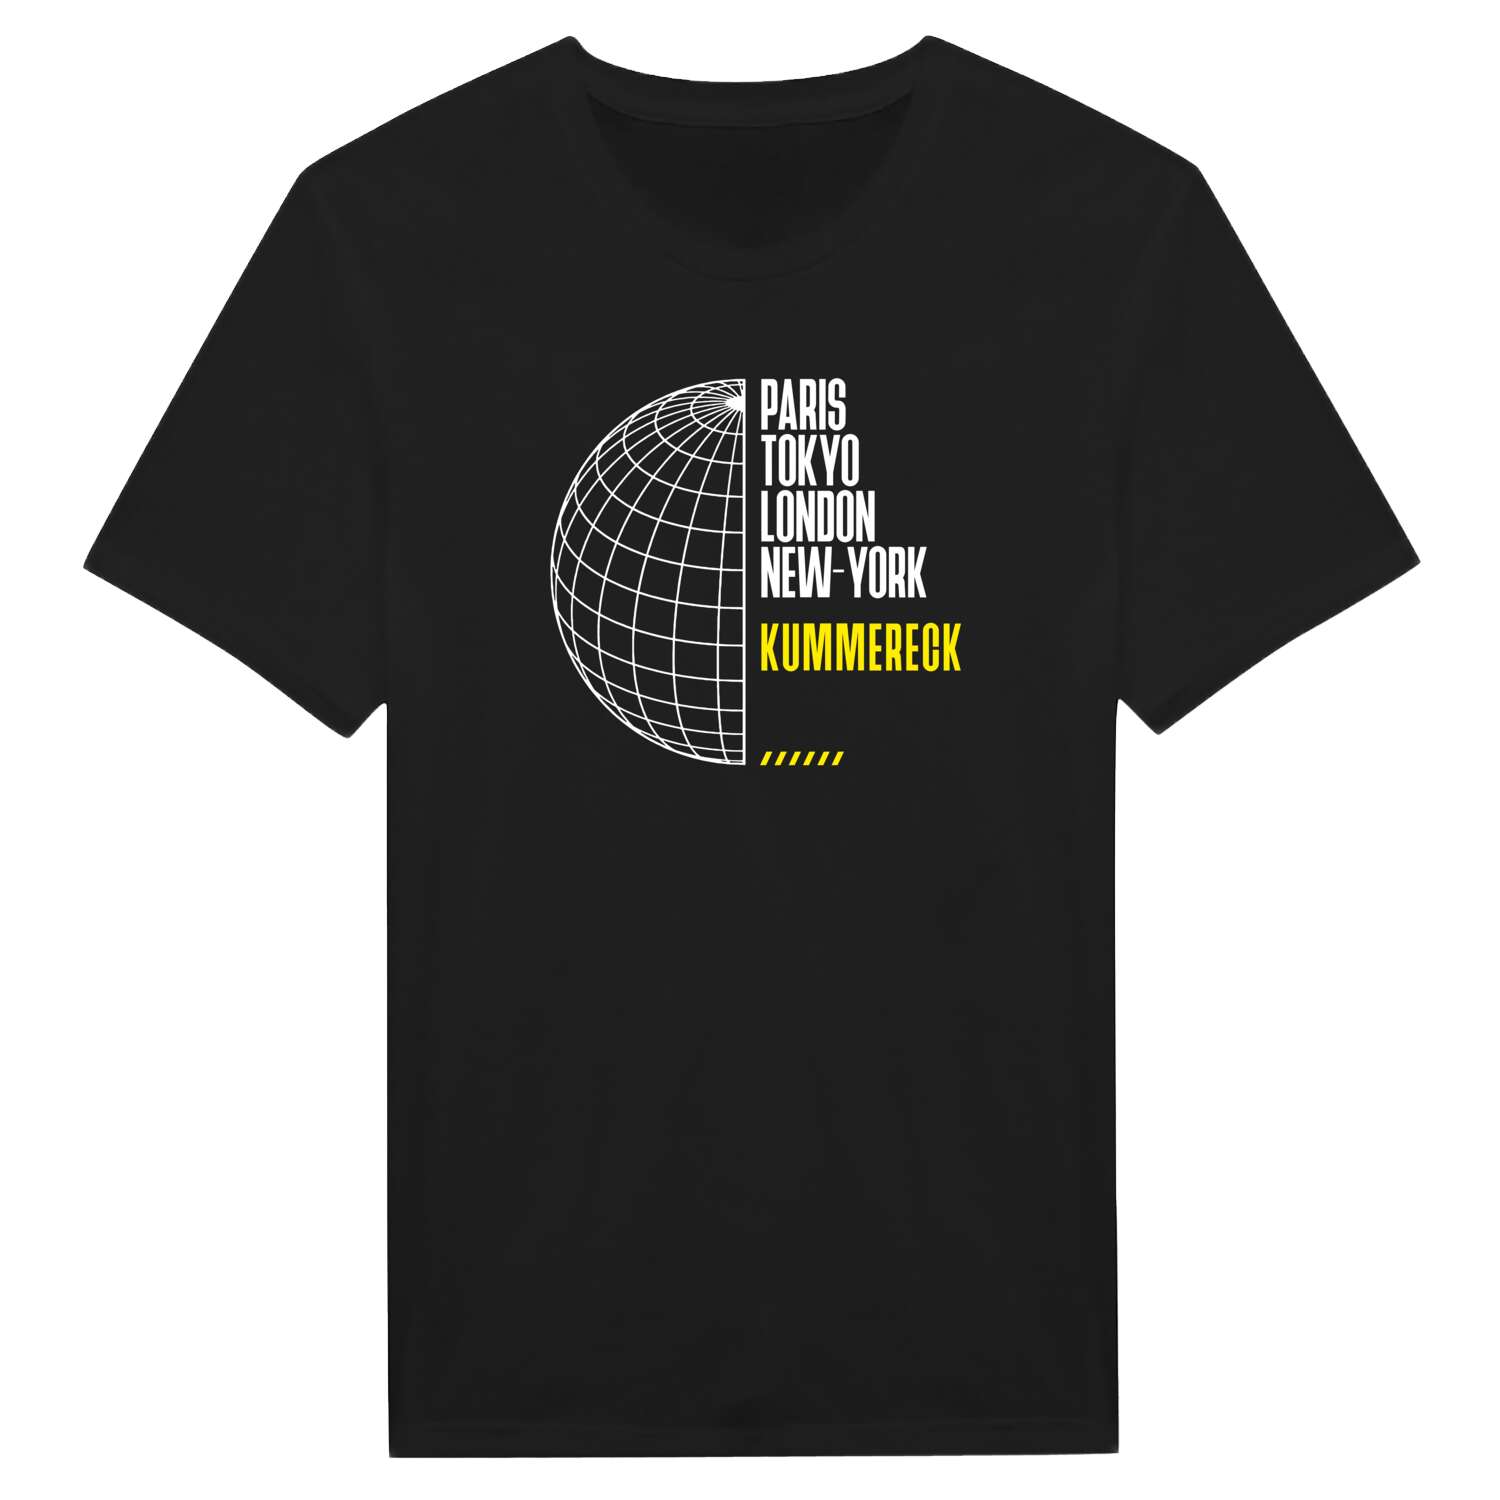 Kummereck T-Shirt »Paris Tokyo London«